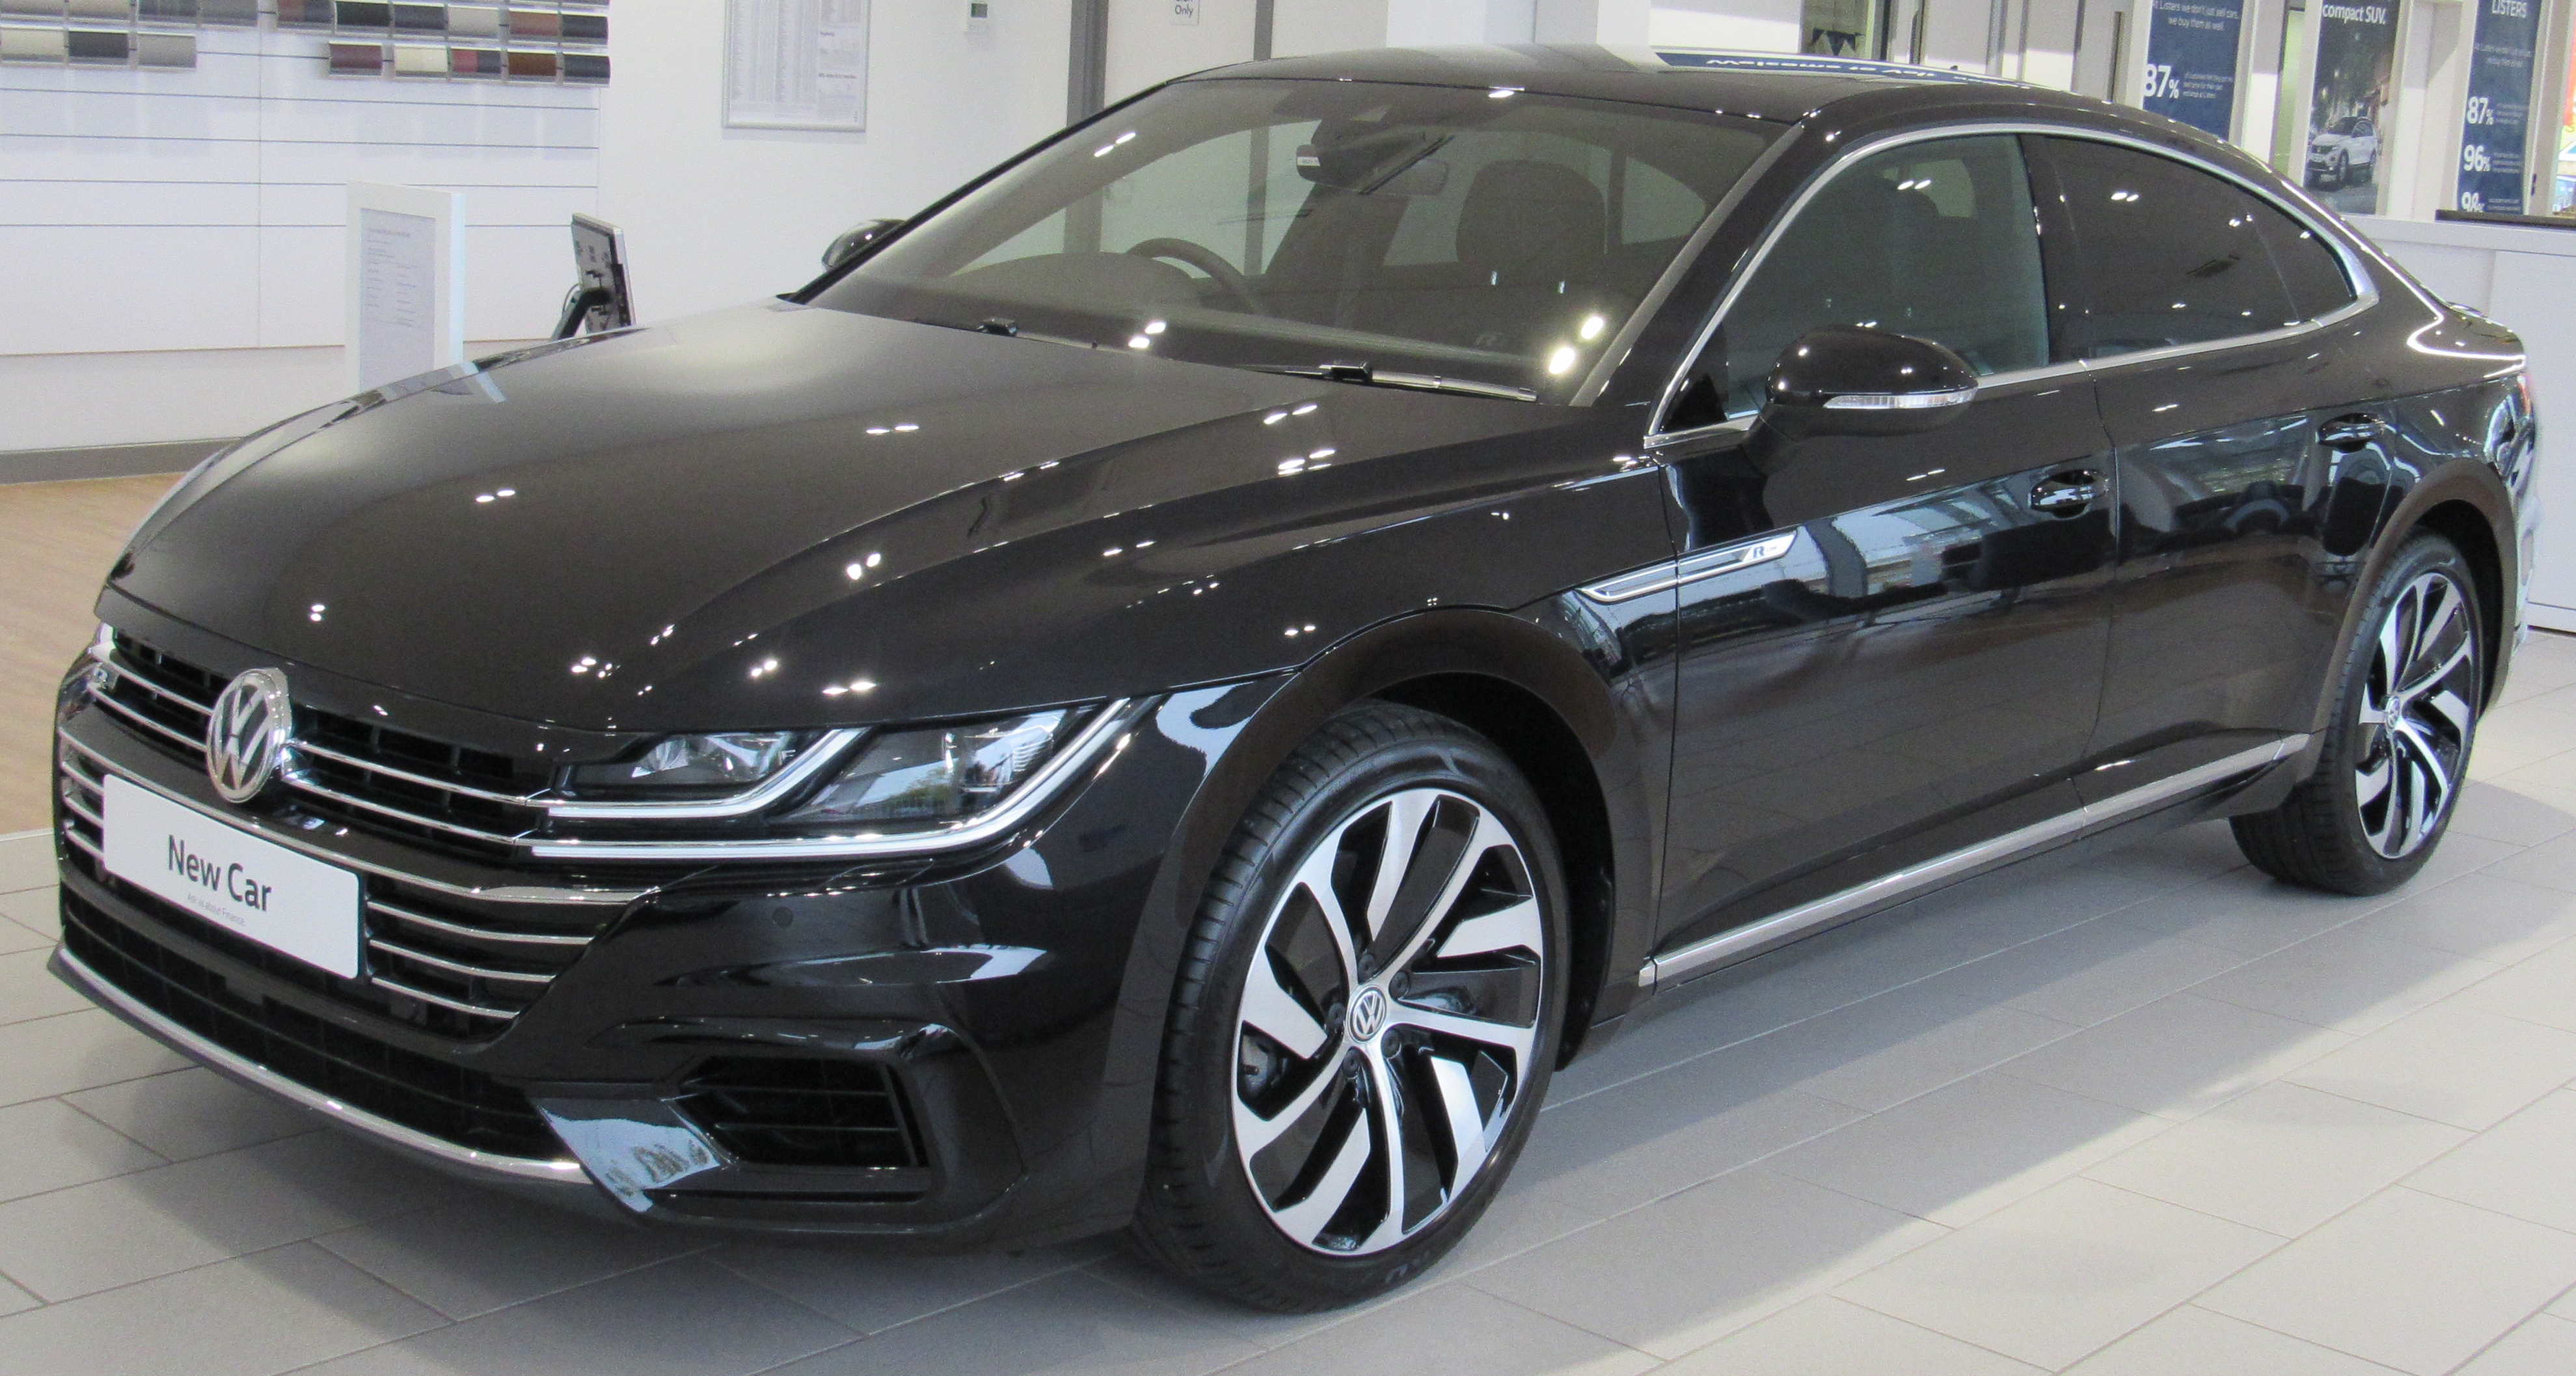 Volkswagen sedan, black, in an auto sales showroom